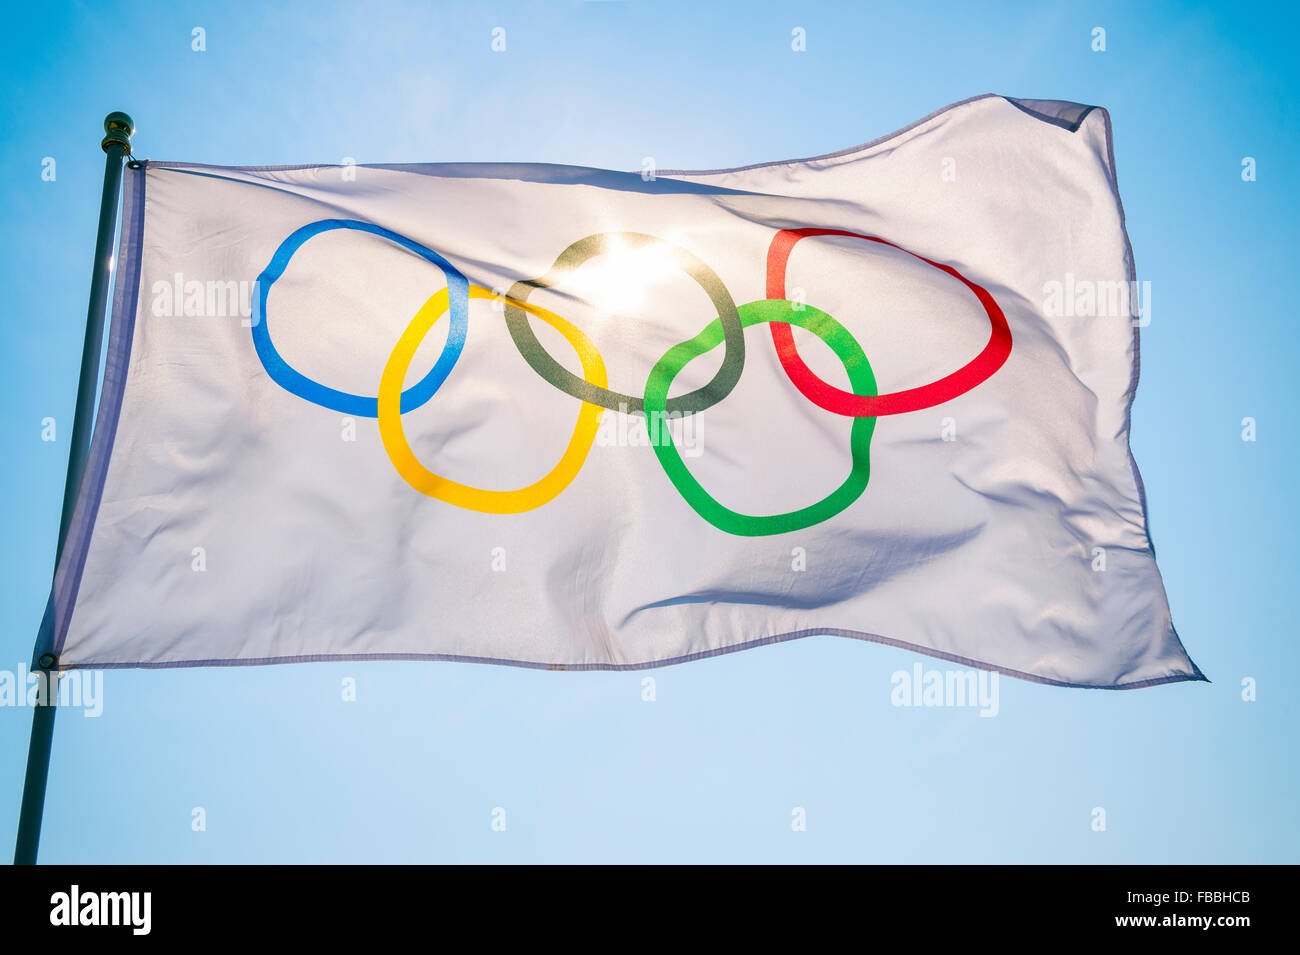 RIO DE JANEIRO, Brasilien - 12. Februar 2015: Eine olympische Fahne flattert im Wind Hintergrundbeleuchtung gegen strahlend blauen Himmel. Stockfoto